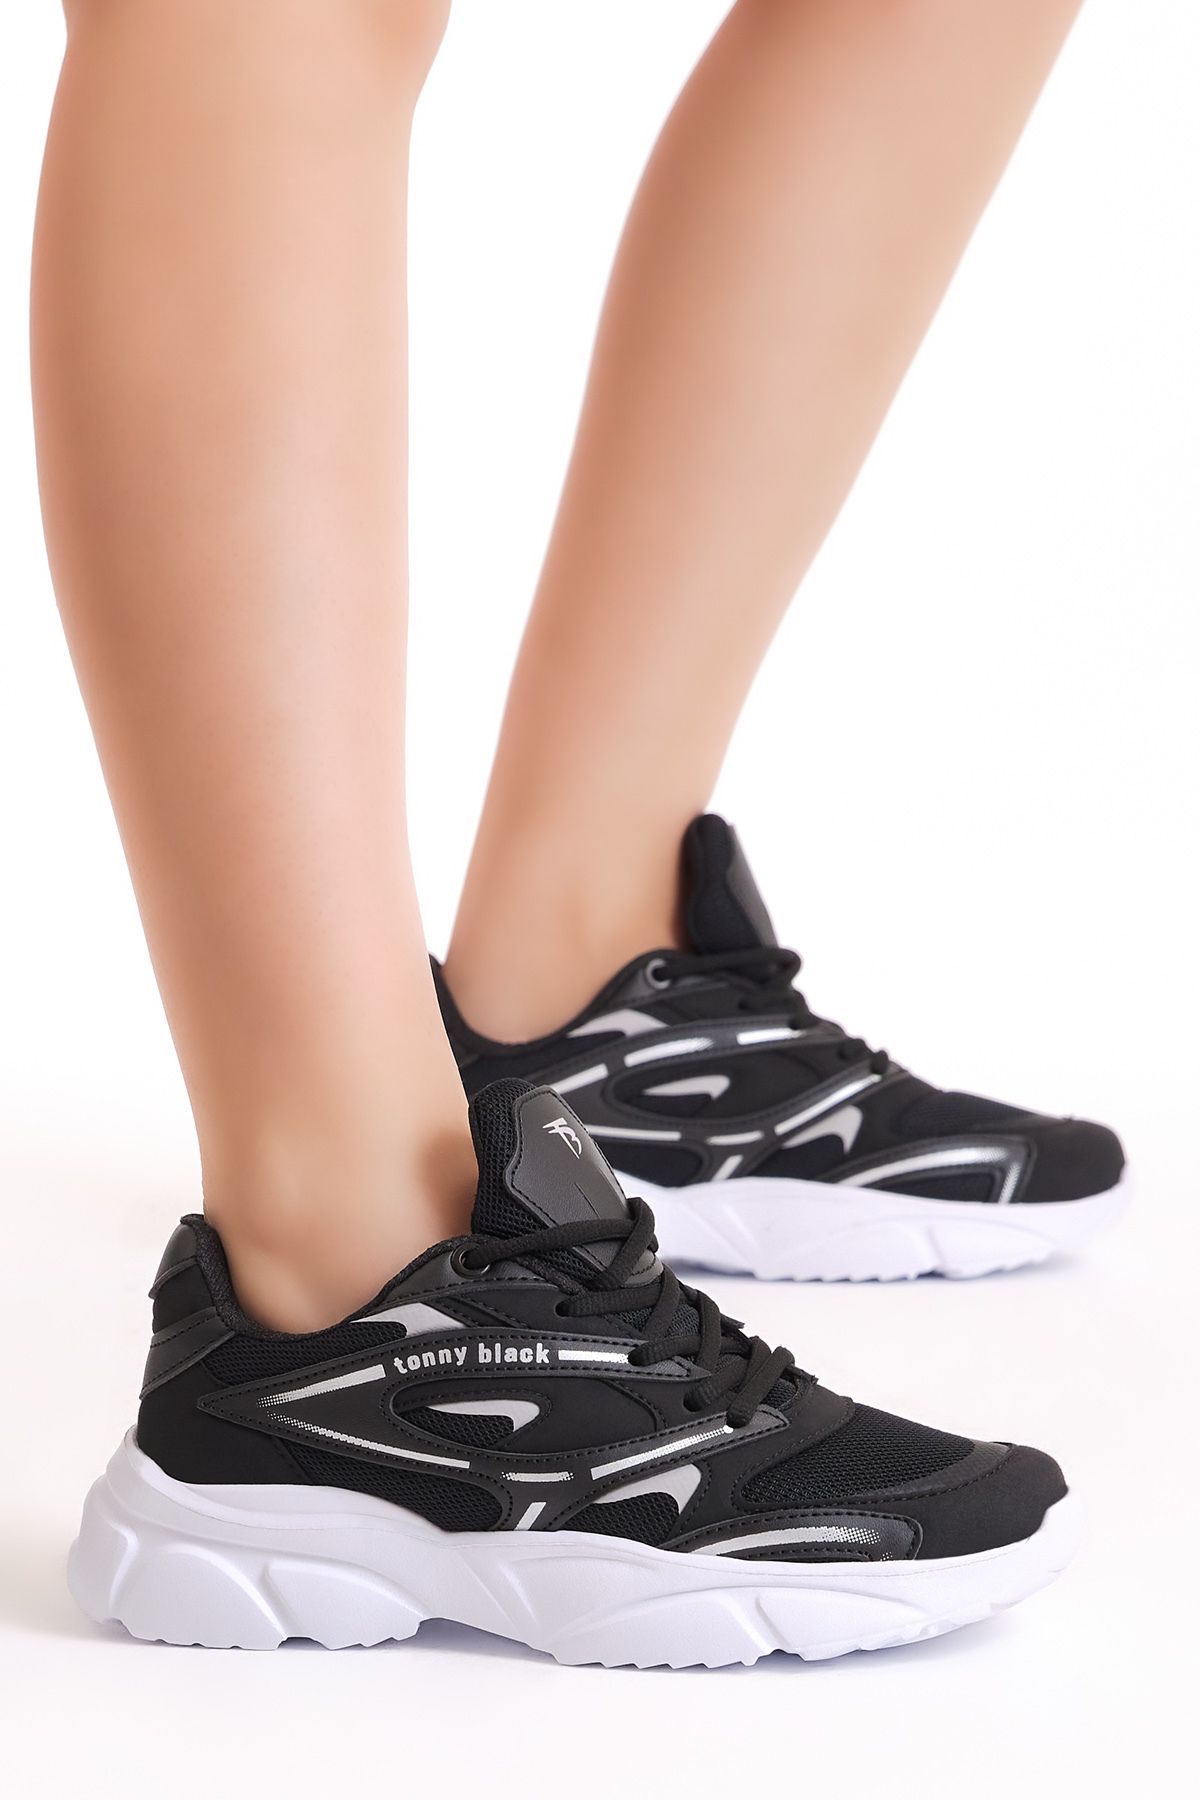 Tonny Black Unisex Siyah Beyaz Faylon Taban Spor Ayakkabı Tbb013